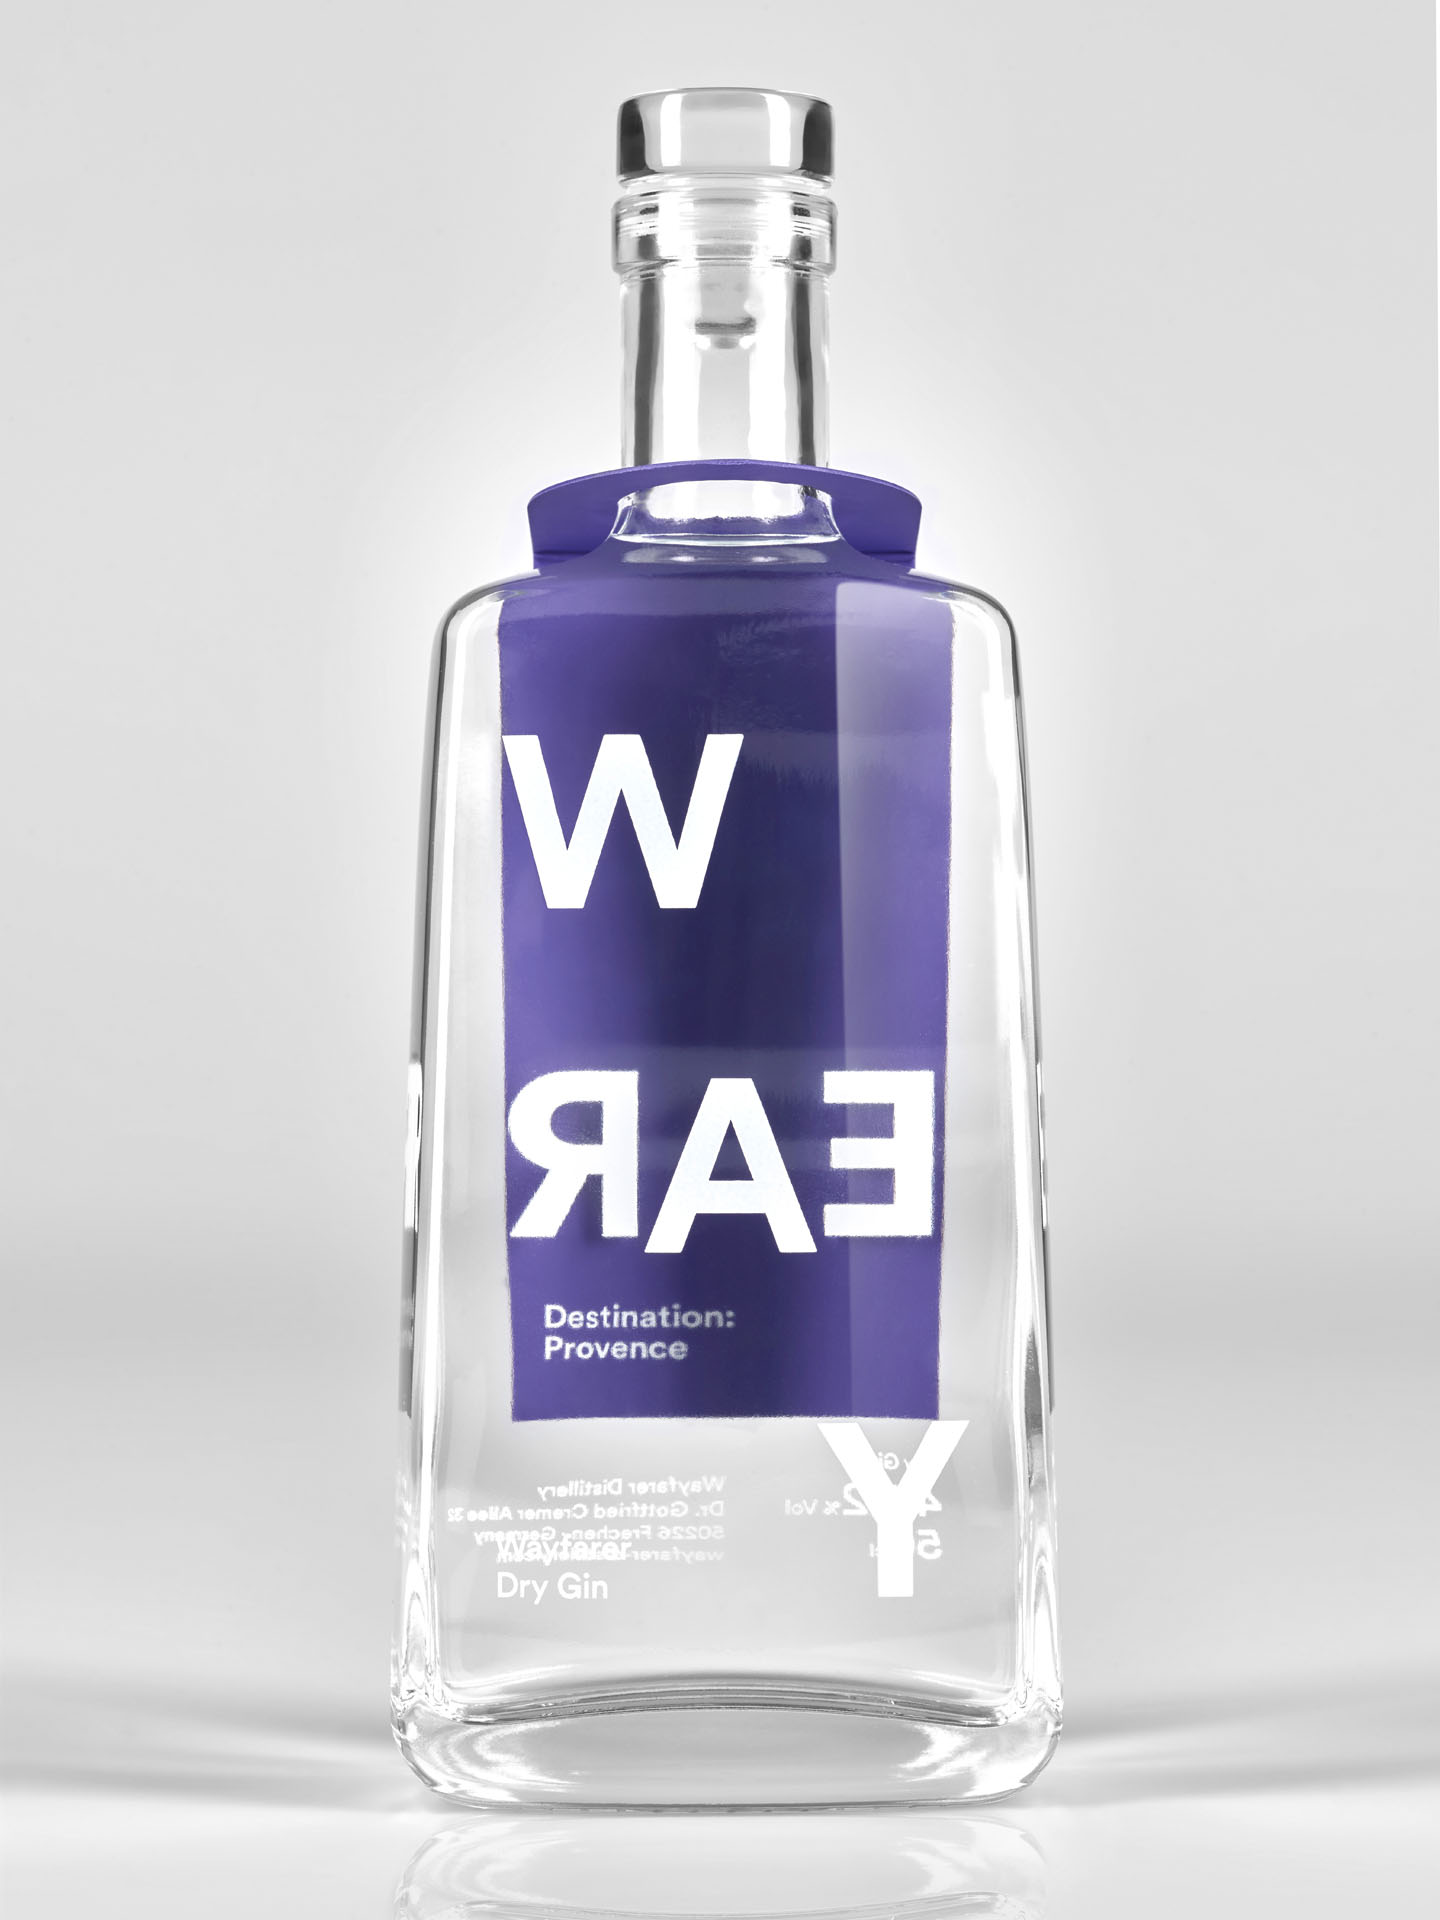 Packshot der Destination: Provence, Wayfarer Dry Gin Flasche vor grauem Hintergrund.